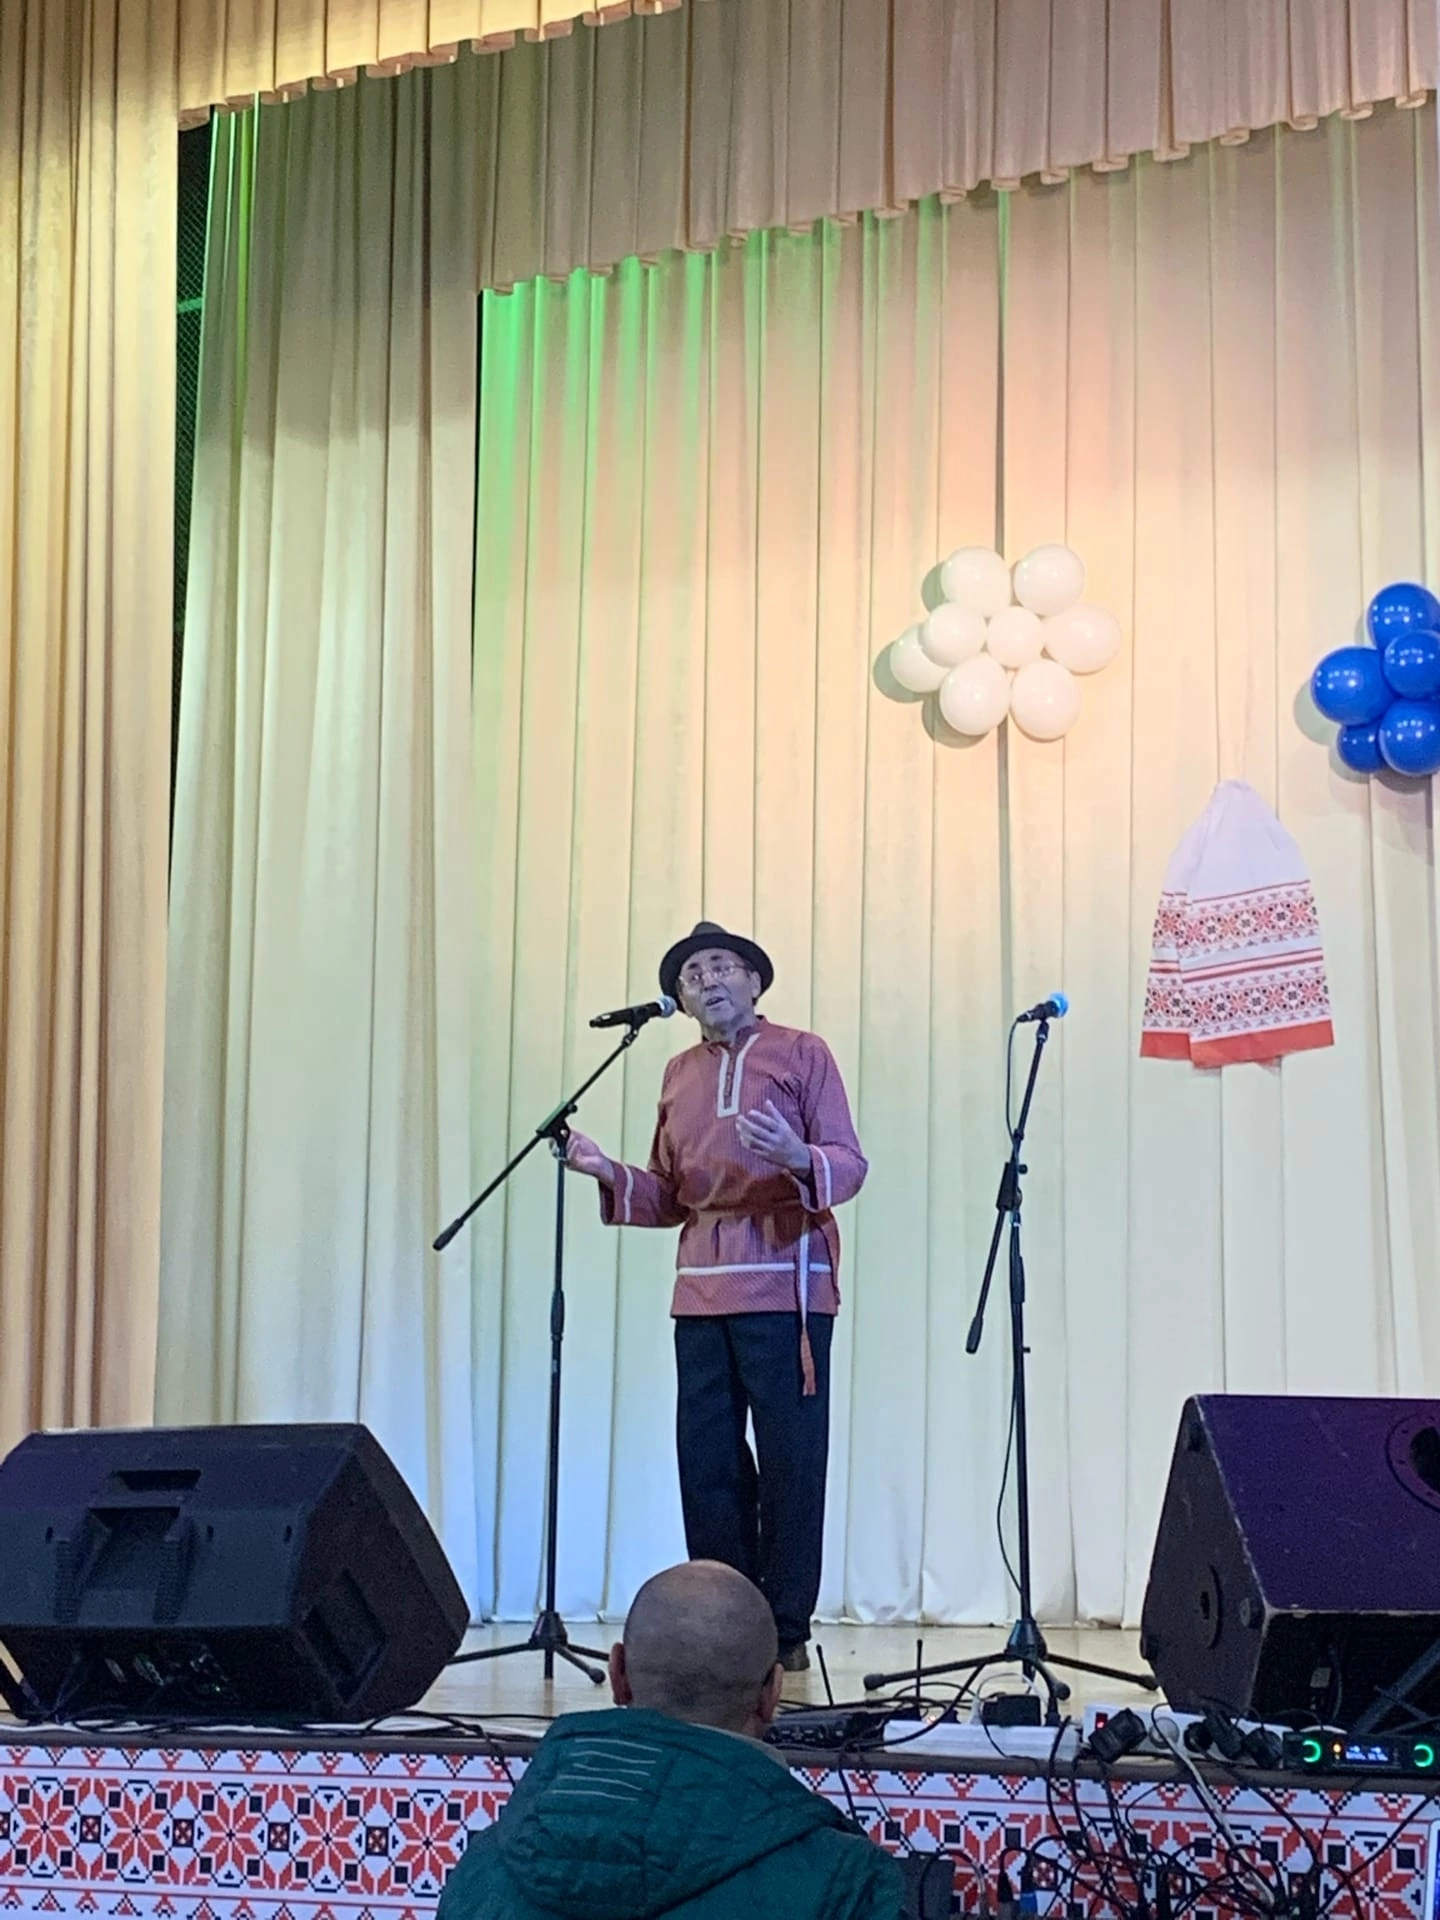 На волне дружбы: в Старом Гришкине состоялся межрегиональный фестиваль кряшенской культуры